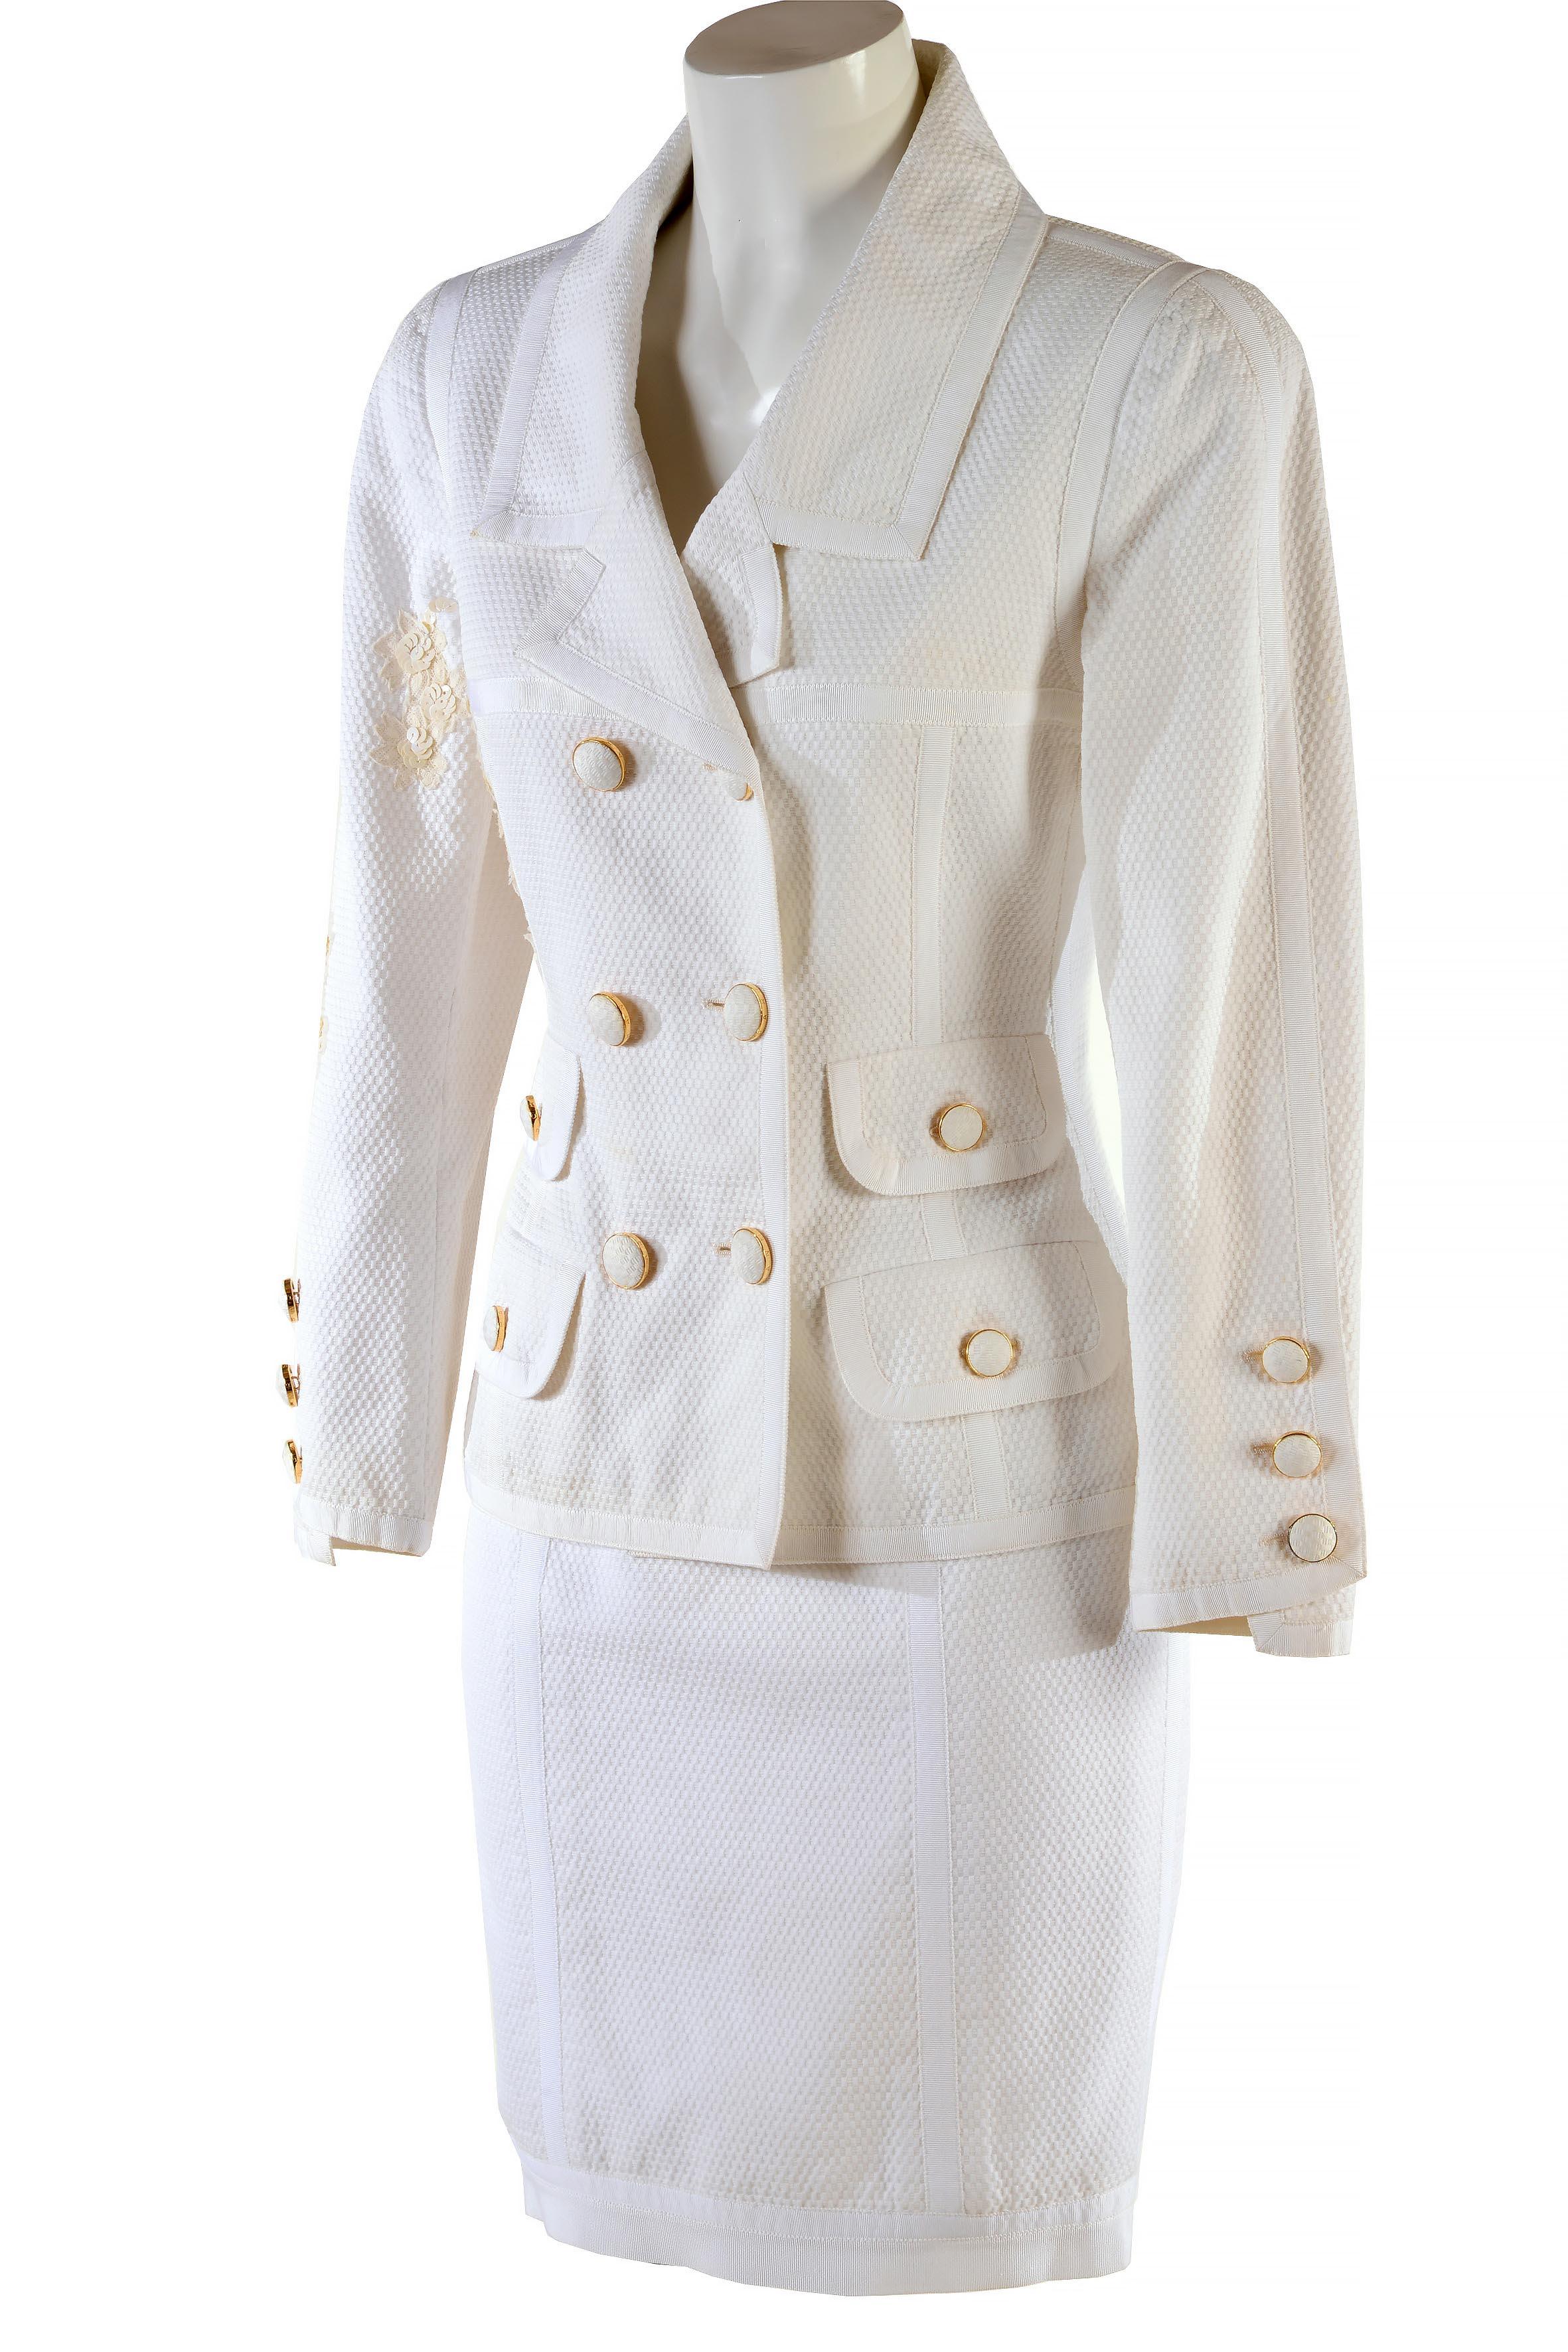 Costume vintage Chanel Boutique de la fin des années 80
Coton piqué blanc 
Veste à double boutonnage dont les boutons sont recouverts du même tissu. Incrustations de paillettes et de fleurs en dentelle.
Doublure en soie
Absence de Label de taille et